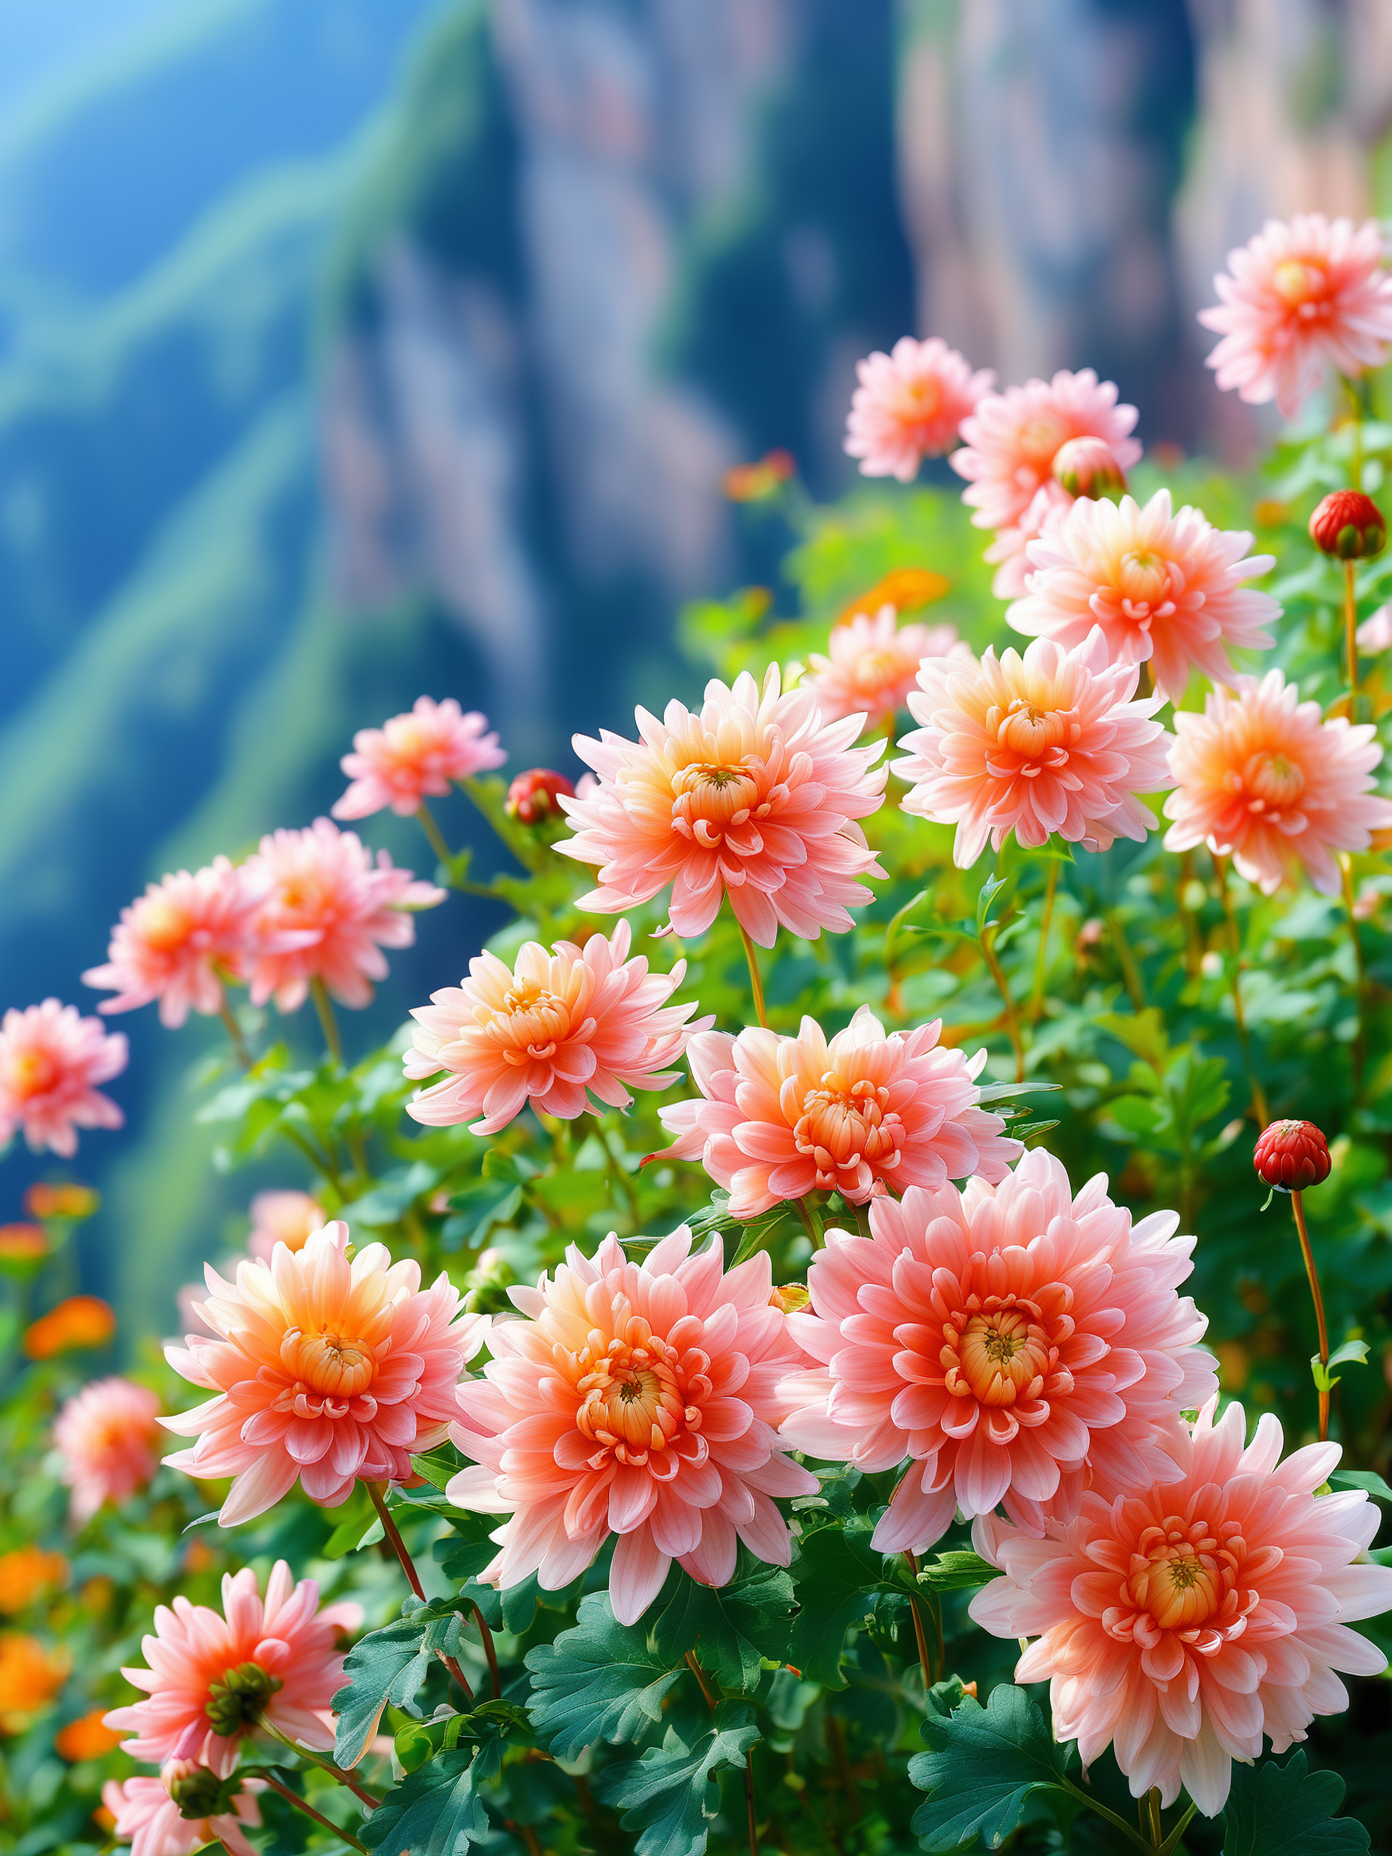 悬崖上的菊花